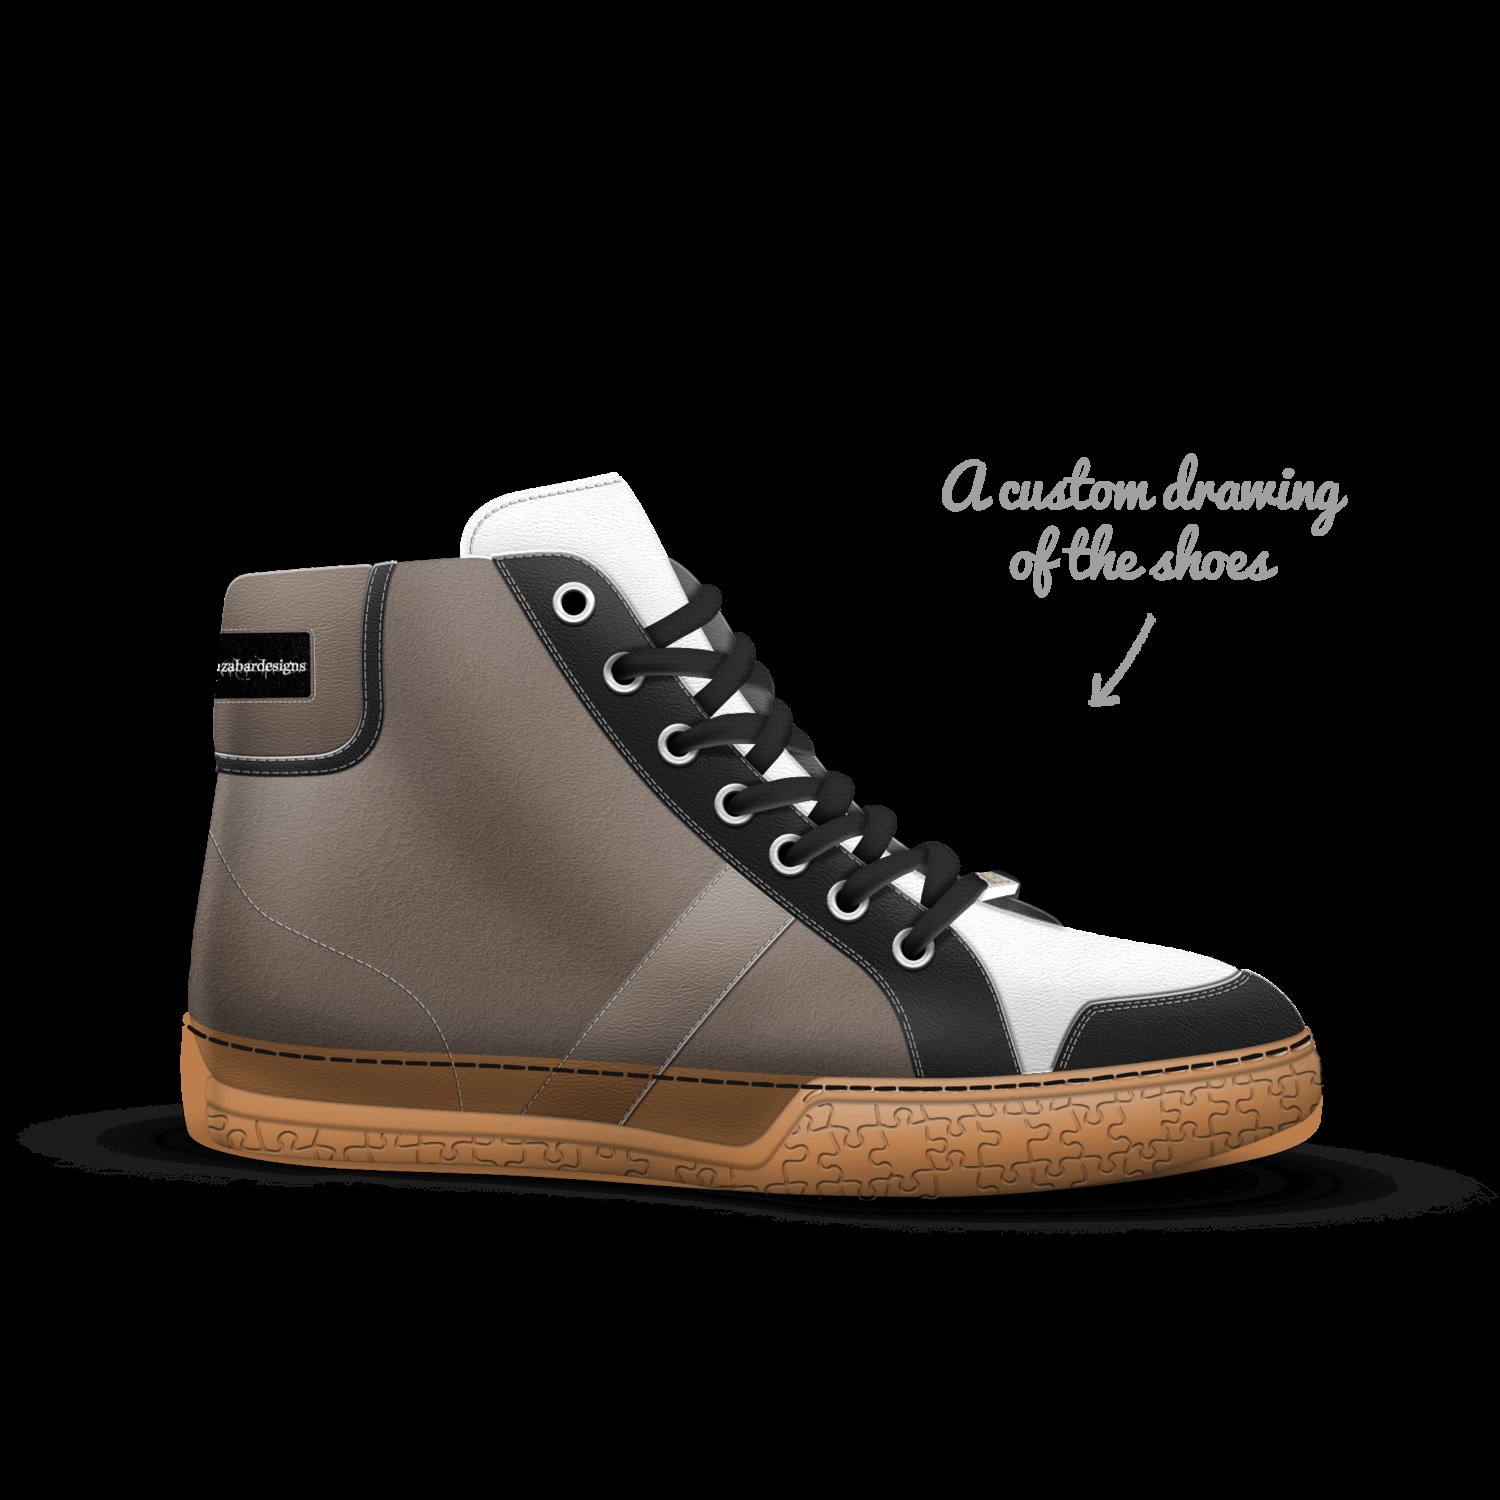 Zanzabar | A Custom Shoe concept by 